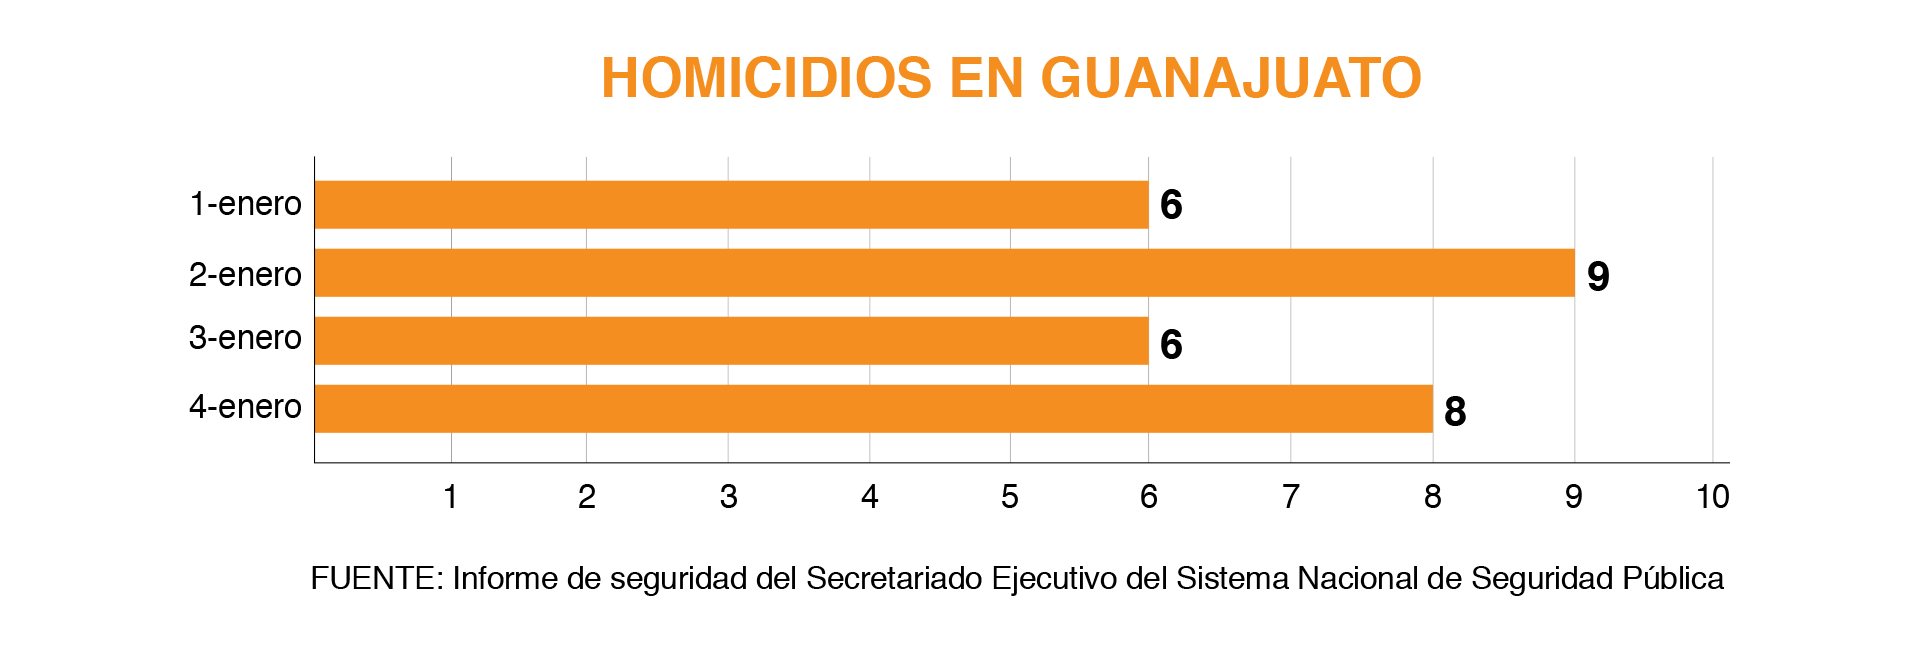 Cifras del Informe de Seguridad diario de SESNSP. Homicidios en Guanajuato los primeros días de enero (Gráfico: Infobae México)